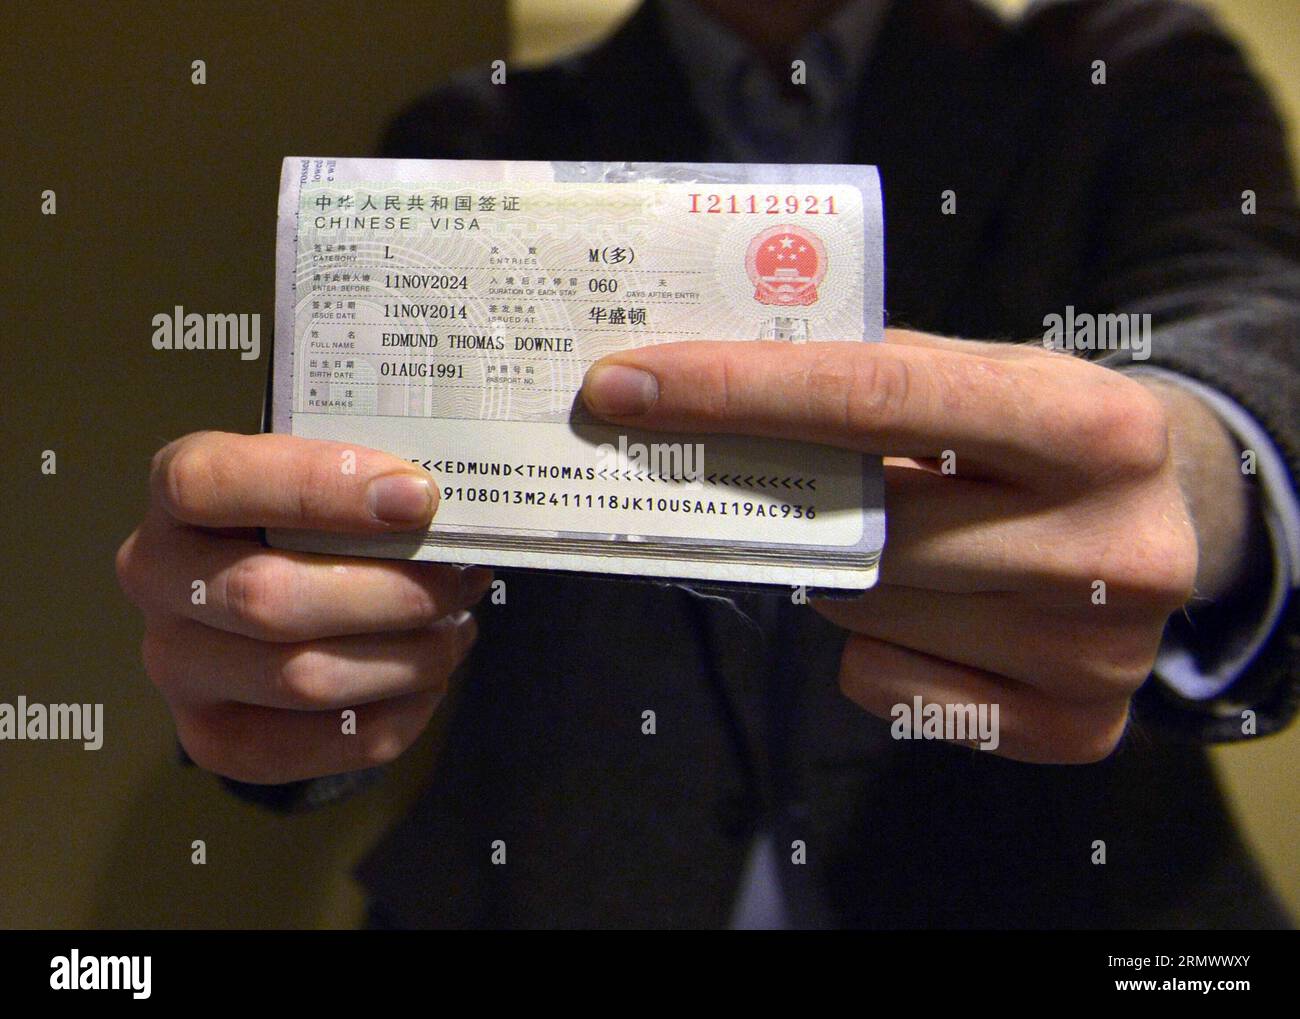 141112 -- WASHINGTON D.C., 12 novembre 2014 -- Edmund Thomas Downie mostra il suo visto alla stampa dopo essere diventato il primo cittadino americano a ricevere un visto decennale presso il Dipartimento visti dell'Ambasciata cinese negli Stati Uniti a Washington D.C., 12 novembre 2014. La Cina ha rilasciato il primo gruppo di visti con validità decennale ai cittadini statunitensi qui mercoledì, implementando un nuovo accordo che dovrebbe stimolare lo scambio tra i due paesi. US-WASHINGTON D.C.-CINA-RILASCIO DEL VISTO DECENNALE YINXBOGU PUBLICATIONXNOTXINXCHN Foto Stock